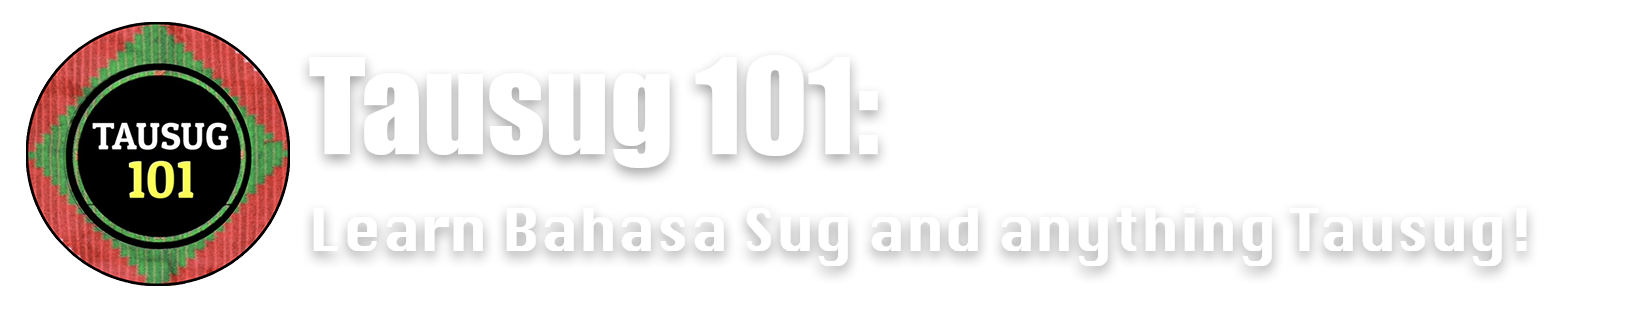 Tausug 101 Brand Logo